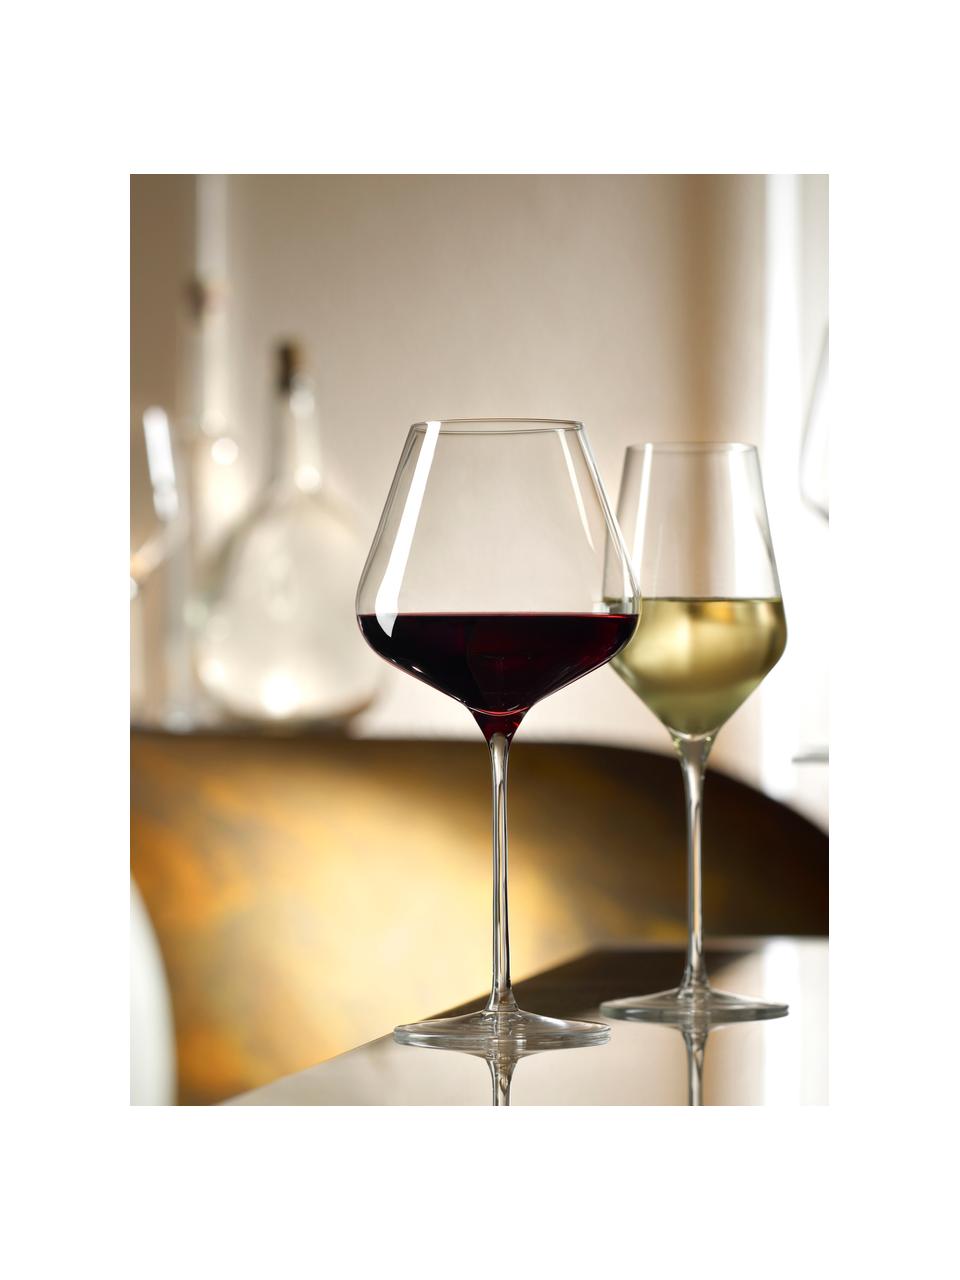 Krištáľové poháre na biele víno Quatrophil, 6 ks, Krištáľové sklo

Vneste lesk krištáľového skla na váš jedálenský stôl! Sklo je výnimočne priehľadné a ťažké, čo znamená, že pôsobí hodnotne a zároveň dobre vyzerá. Navyše jemné tvary robia z každého kusu špeciálny kúsok, ktorý je praktický aj krásny., Priehľadná, Ø 8 x V 25 cm, 405 ml